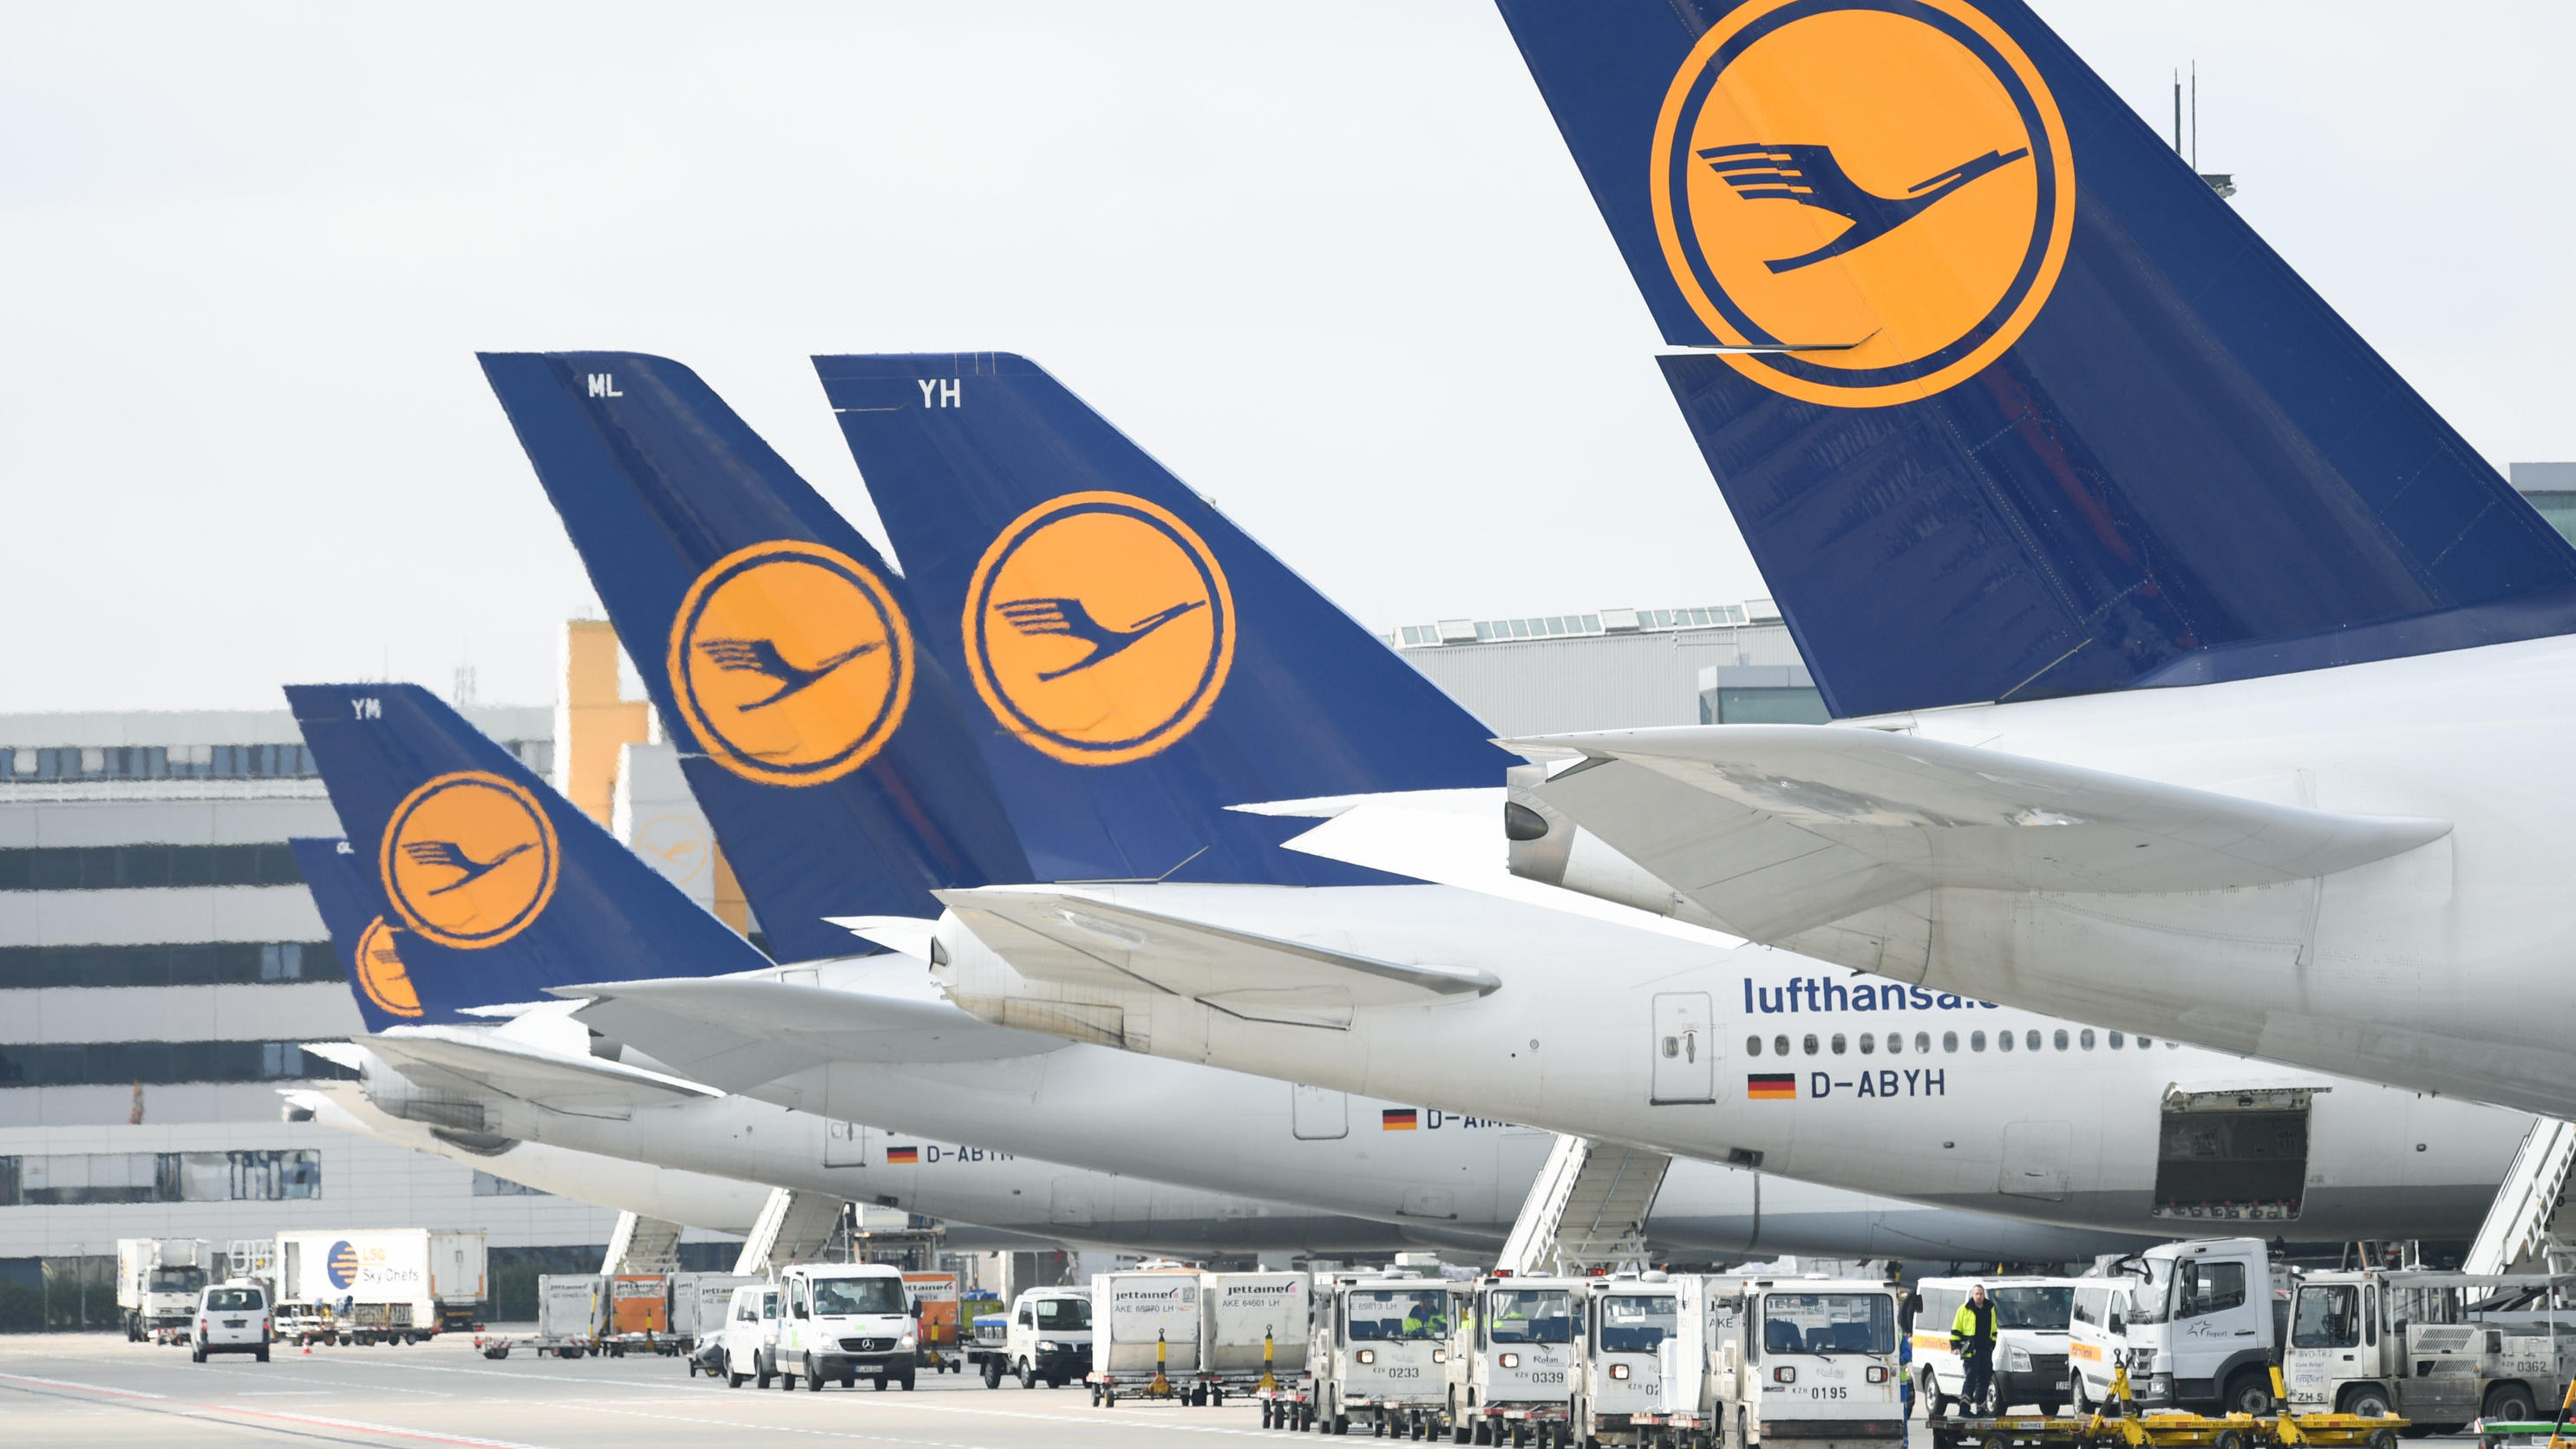 ARCHIV - 14.03.2018, Hessen, Frankfurt/Main: Lufthansa-Maschinen mit dem Kranich-Logo stehen am Frankfurter Flughafen. (Zu dpa «Lufthansa berichtet über Bilanz 2019 und Überlebenskampf 2020» Foto: Arne Dedert/dpa +++ dpa-Bildfunk +++